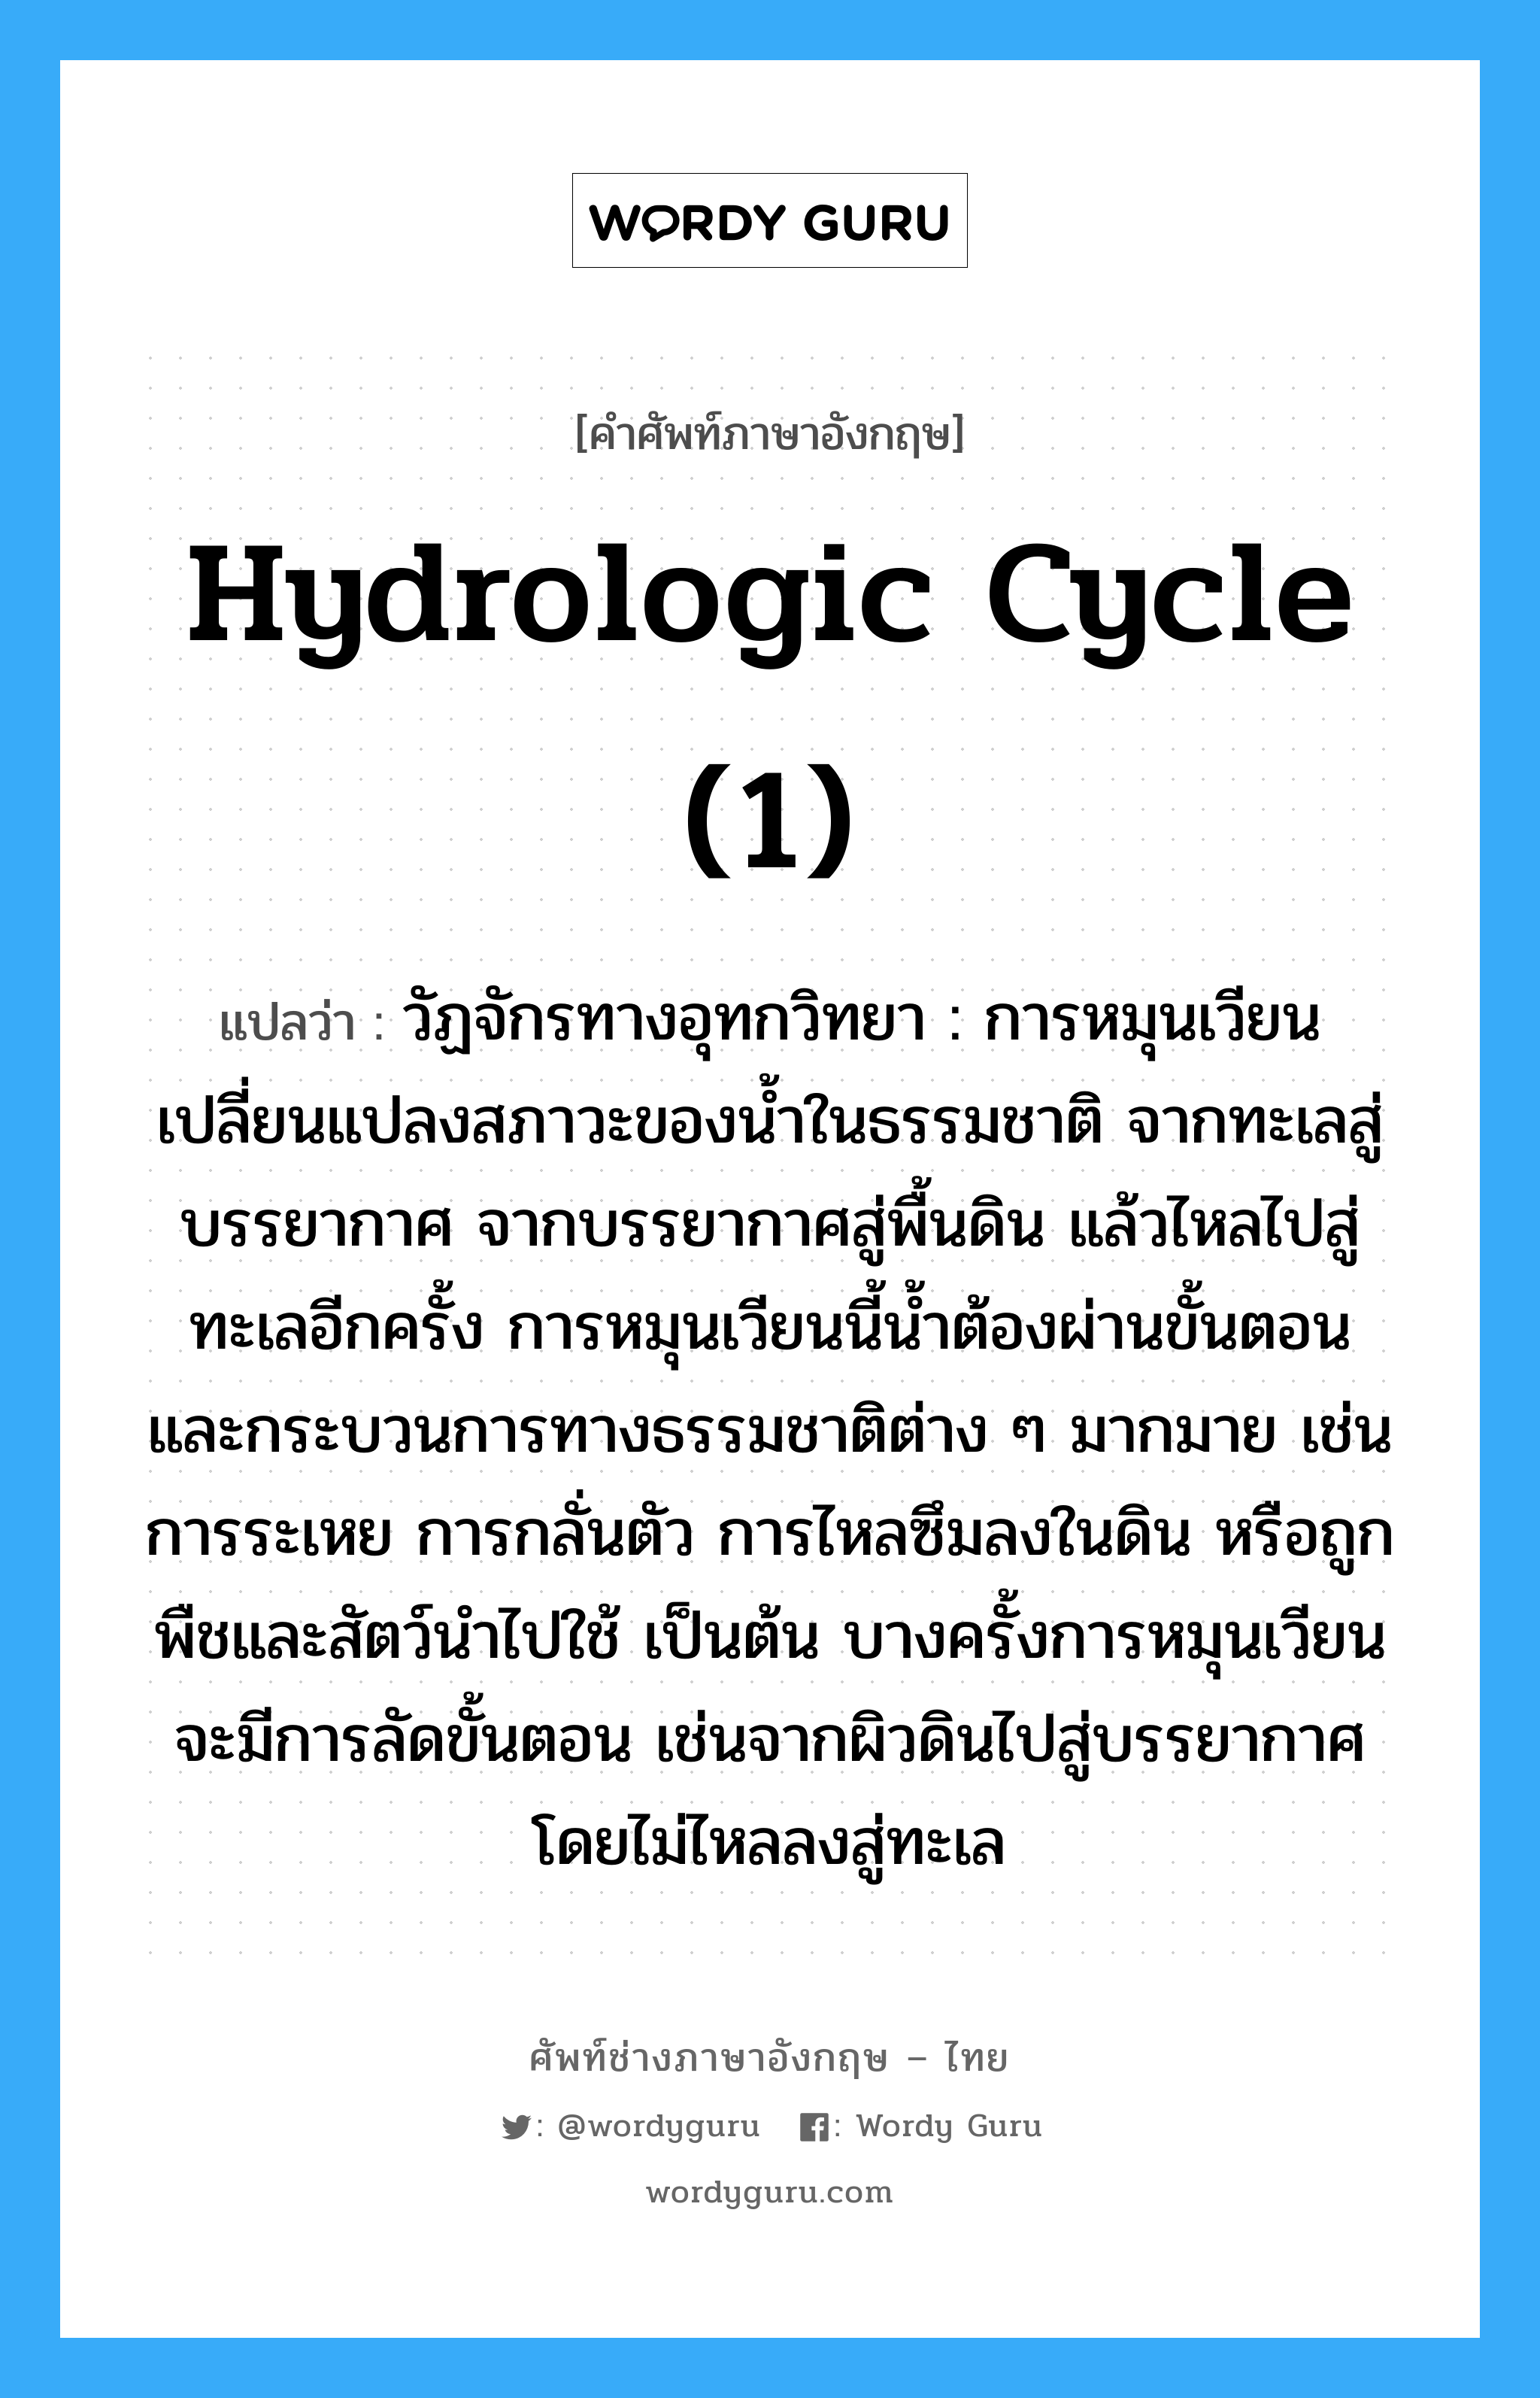 hydrologic cycle (1) แปลว่า?, คำศัพท์ช่างภาษาอังกฤษ - ไทย hydrologic cycle (1) คำศัพท์ภาษาอังกฤษ hydrologic cycle (1) แปลว่า วัฏจักรทางอุทกวิทยา : การหมุนเวียนเปลี่ยนแปลงสภาวะของน้ำในธรรมชาติ จากทะเลสู่บรรยากาศ จากบรรยากาศสู่พื้นดิน แล้วไหลไปสู่ทะเลอีกครั้ง การหมุนเวียนนี้น้ำต้องผ่านขั้นตอน และกระบวนการทางธรรมชาติต่าง ๆ มากมาย เช่น การระเหย การกลั่นตัว การไหลซึมลงในดิน หรือถูกพืชและสัตว์นำไปใช้ เป็นต้น บางครั้งการหมุนเวียนจะมีการลัดขั้นตอน เช่นจากผิวดินไปสู่บรรยากาศโดยไม่ไหลลงสู่ทะเล